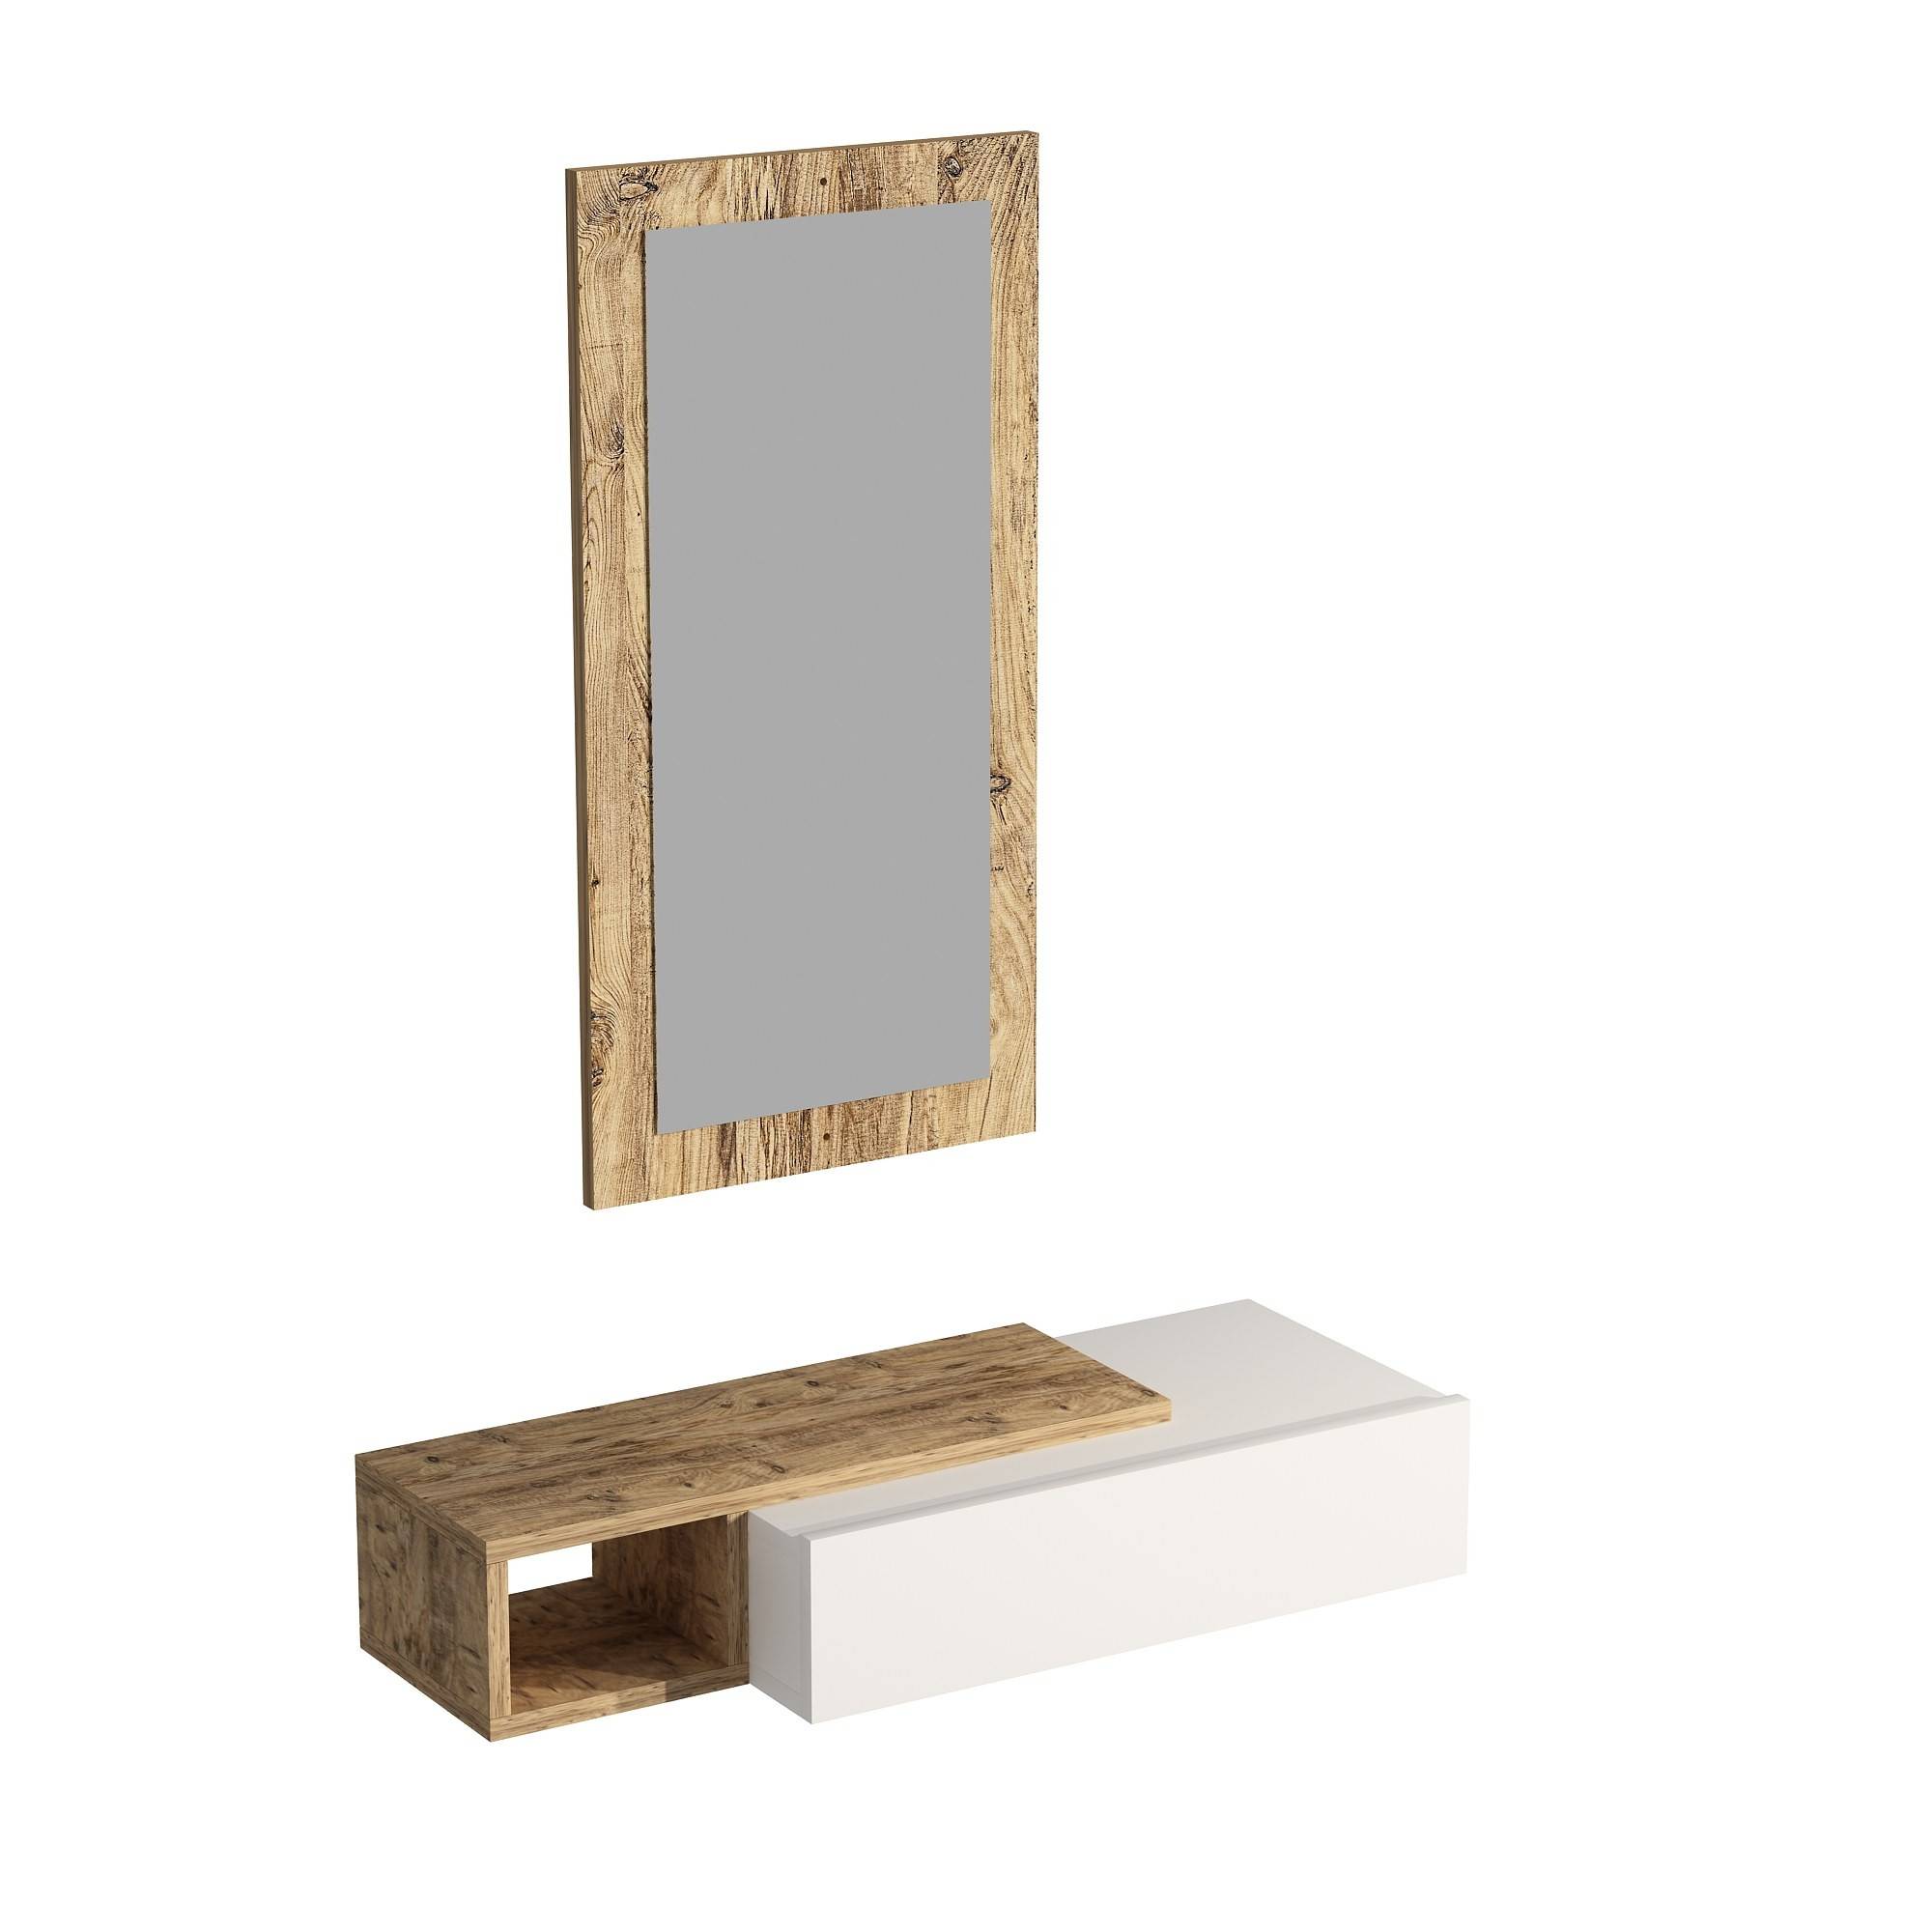 Bazid hangplank met spiegel Licht hout en antraciet